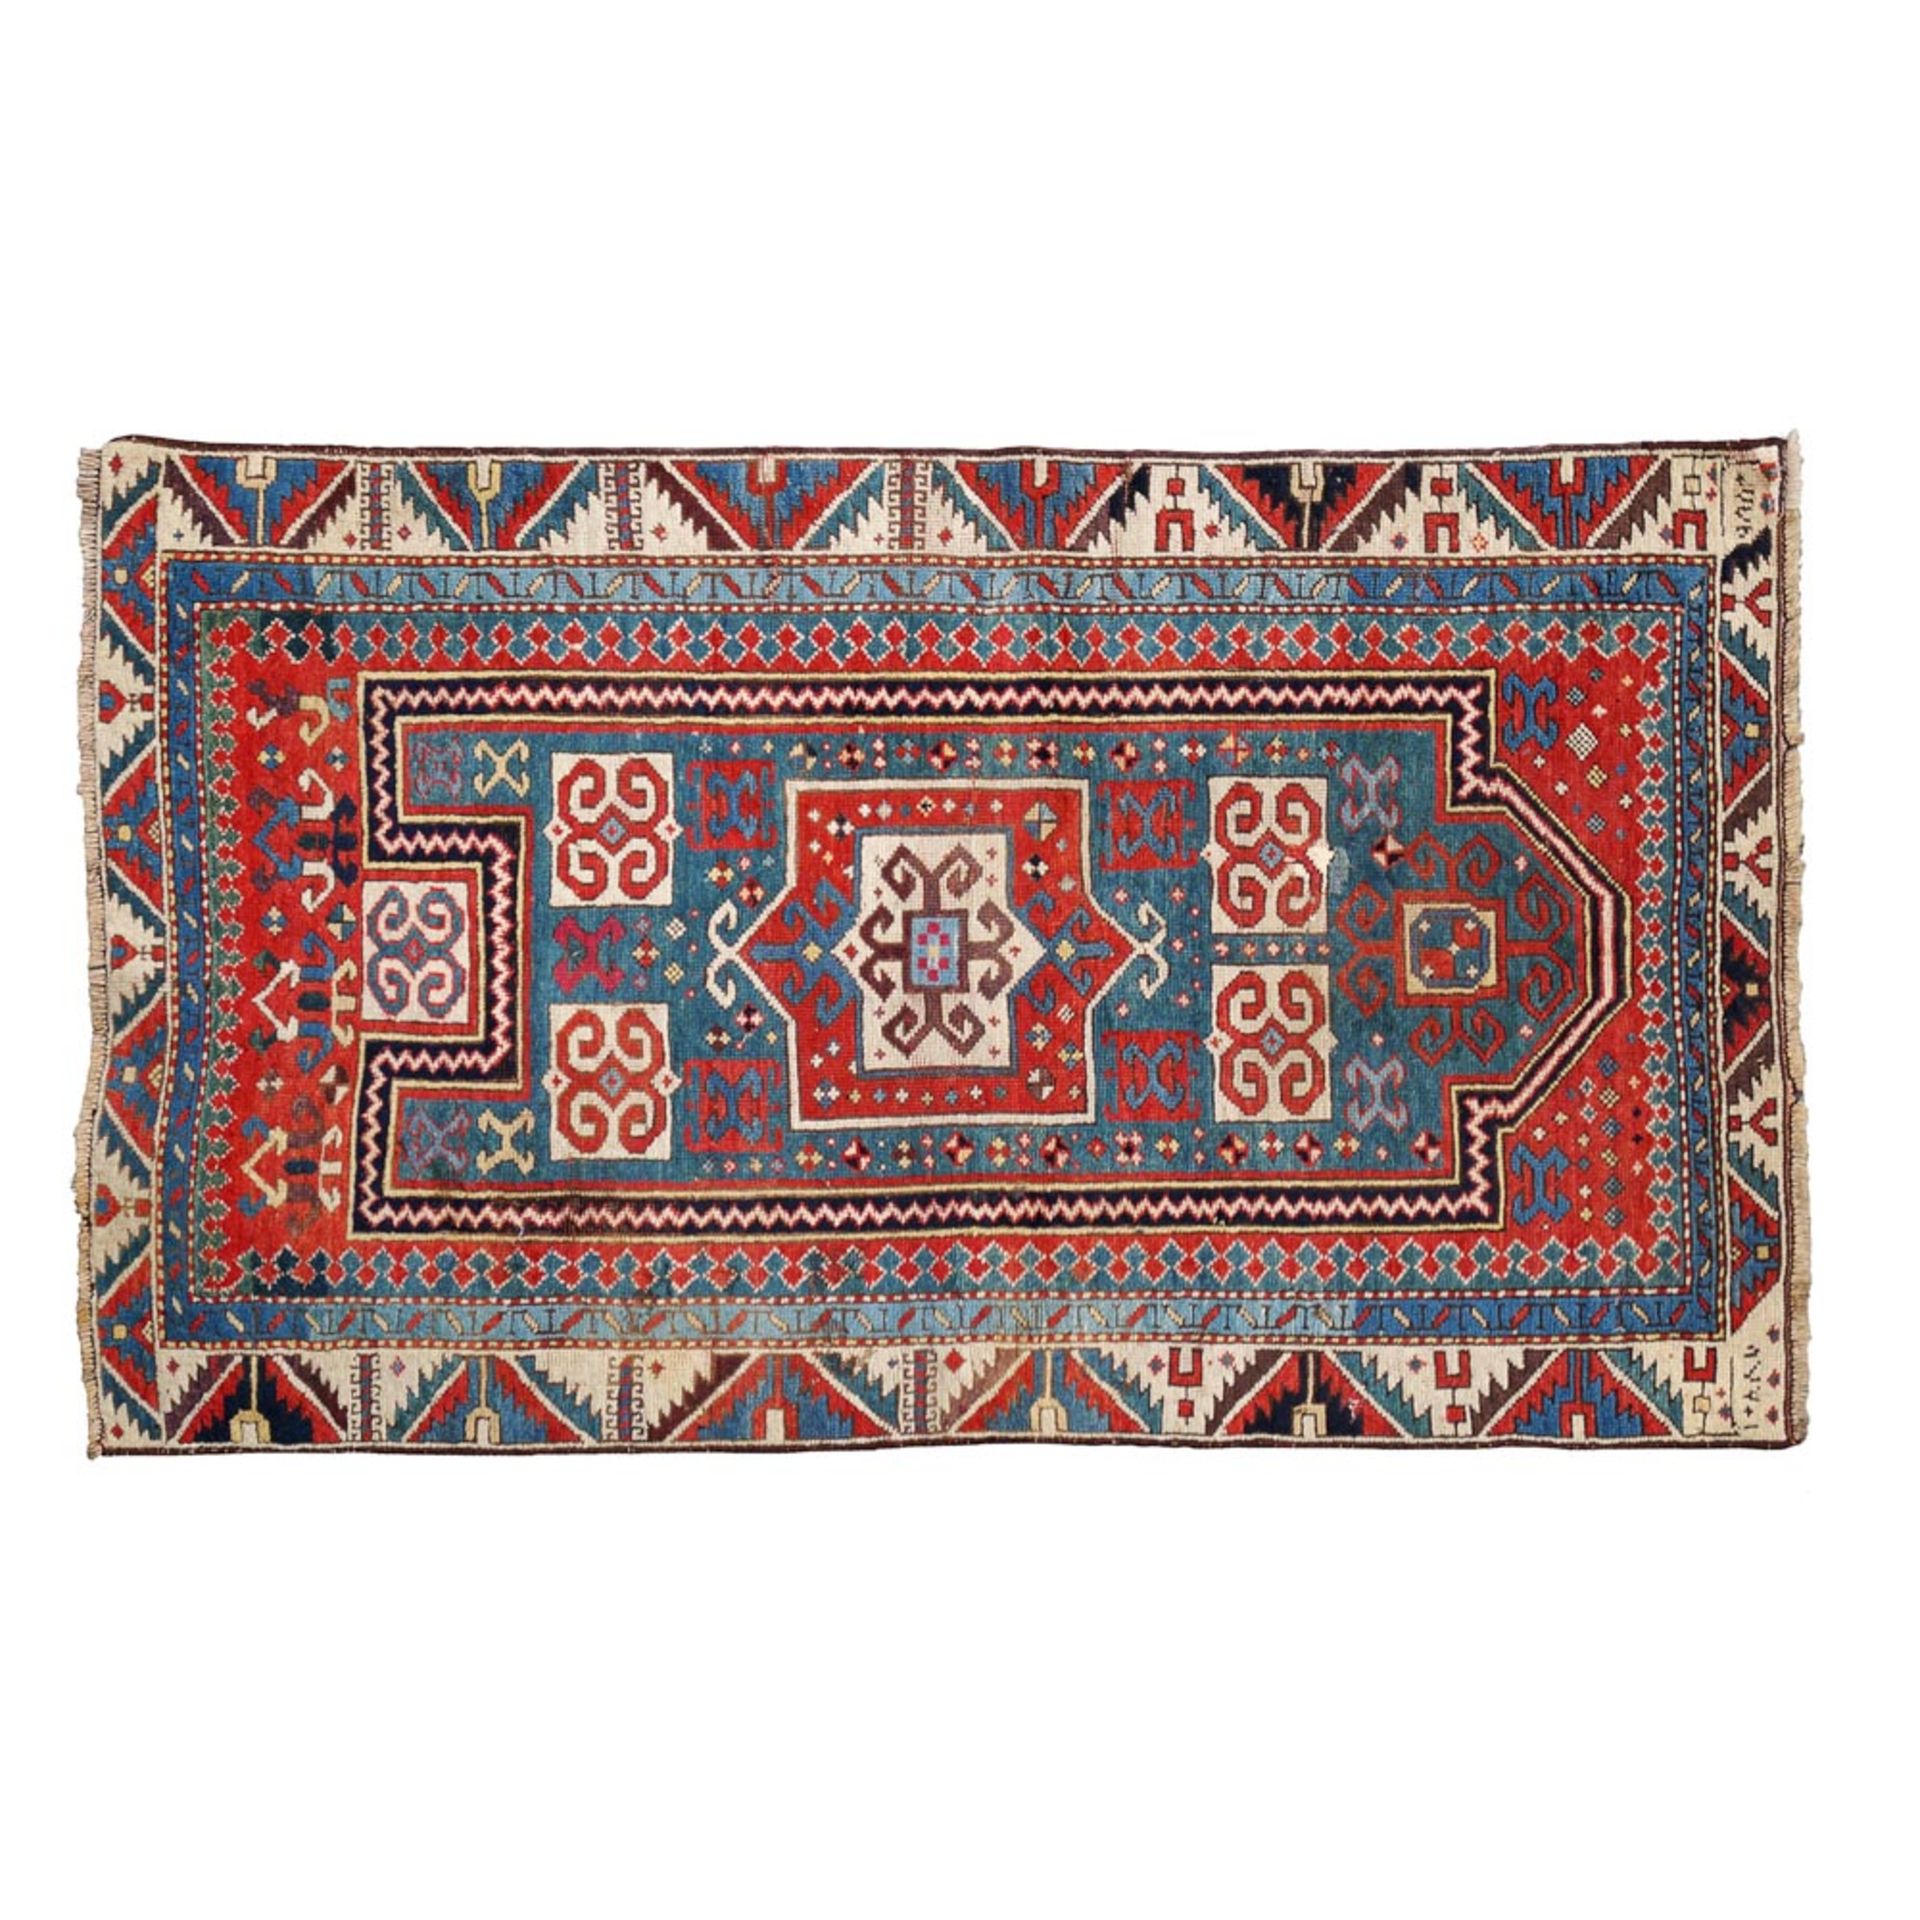 An antique Caucasian carpet 19th century 145x87 cm.